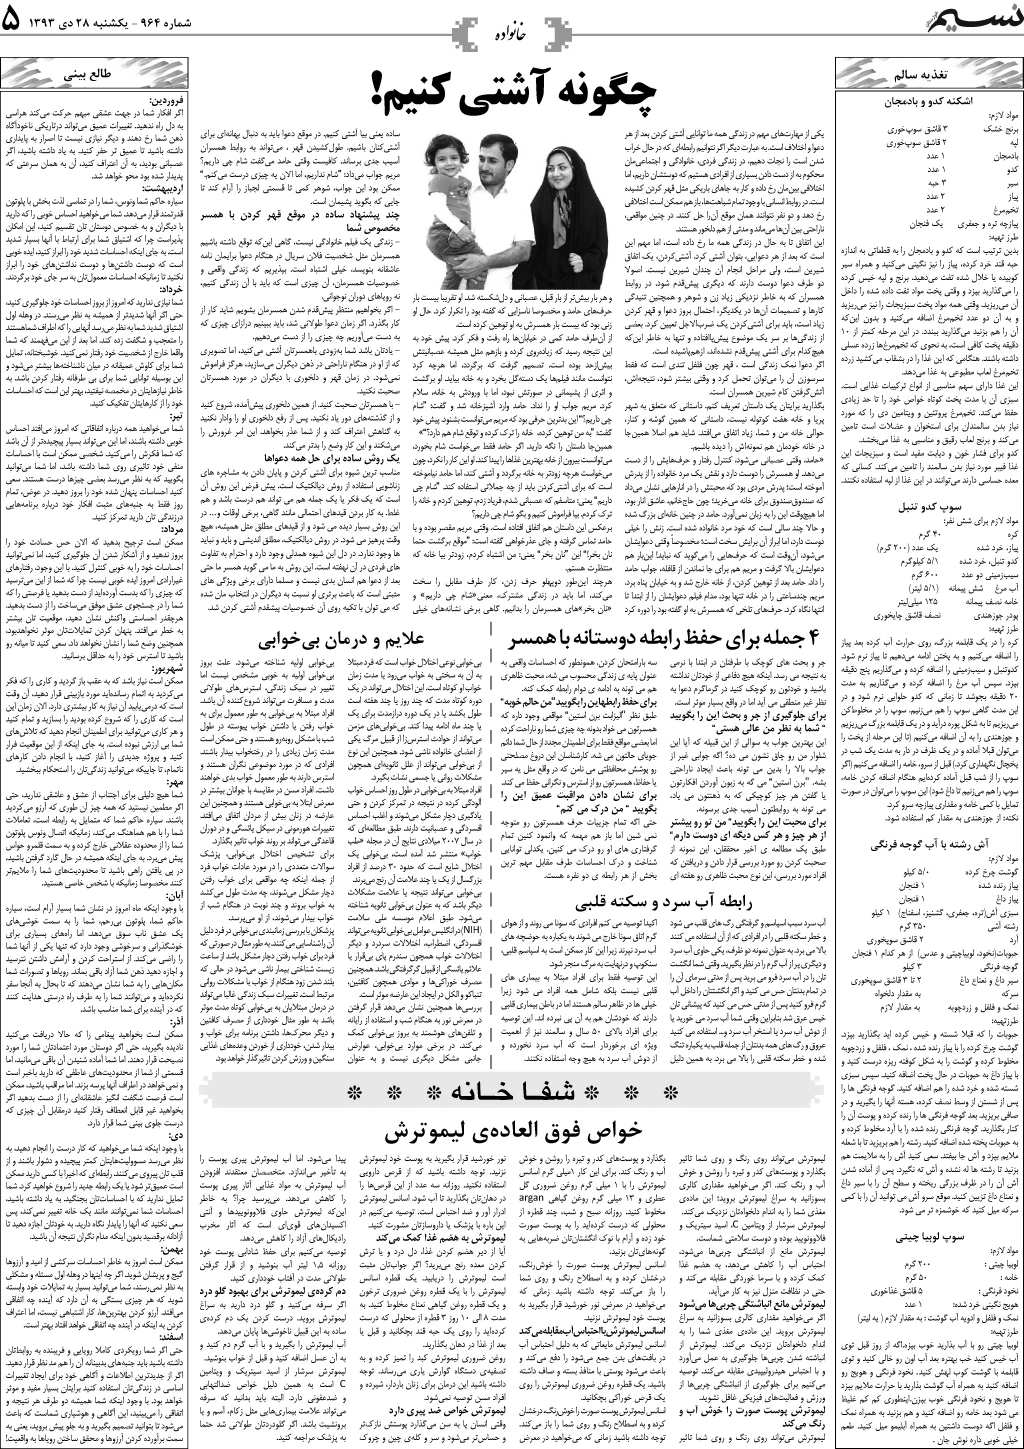 صفحه خانواده روزنامه نسیم شماره 964